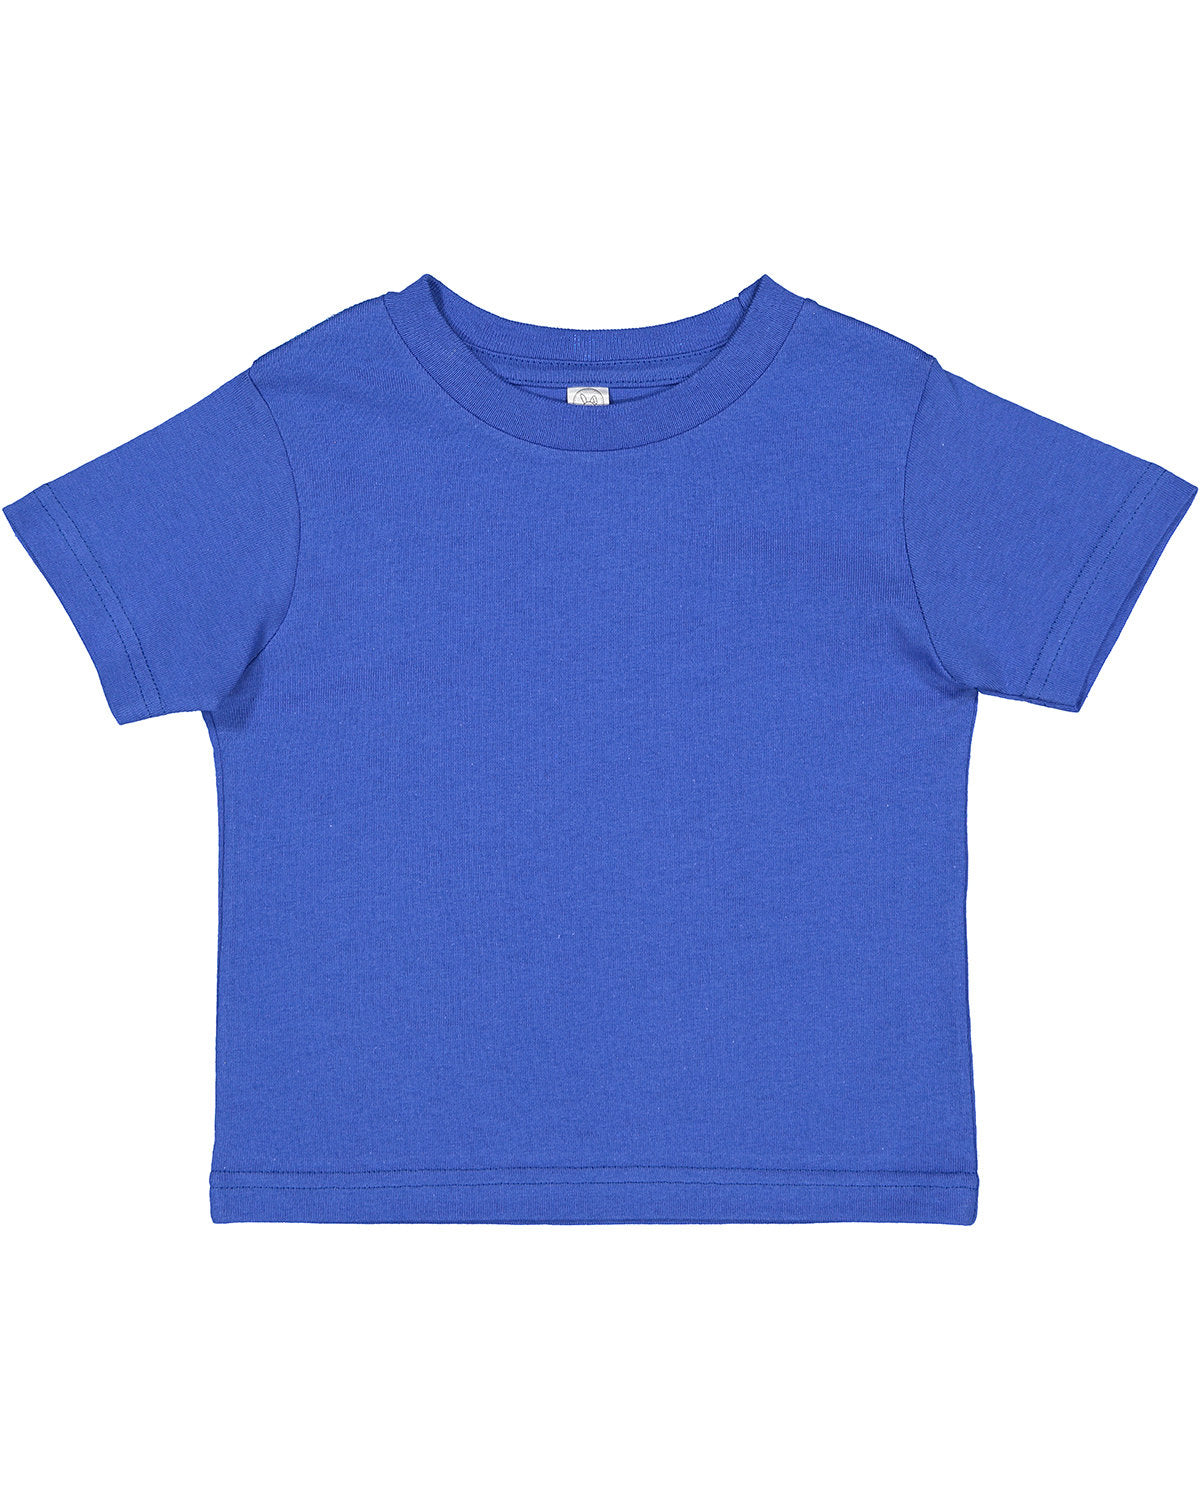 Rabbit Skins Toddler Cotton Jersey T-Shirt 2T / Royal